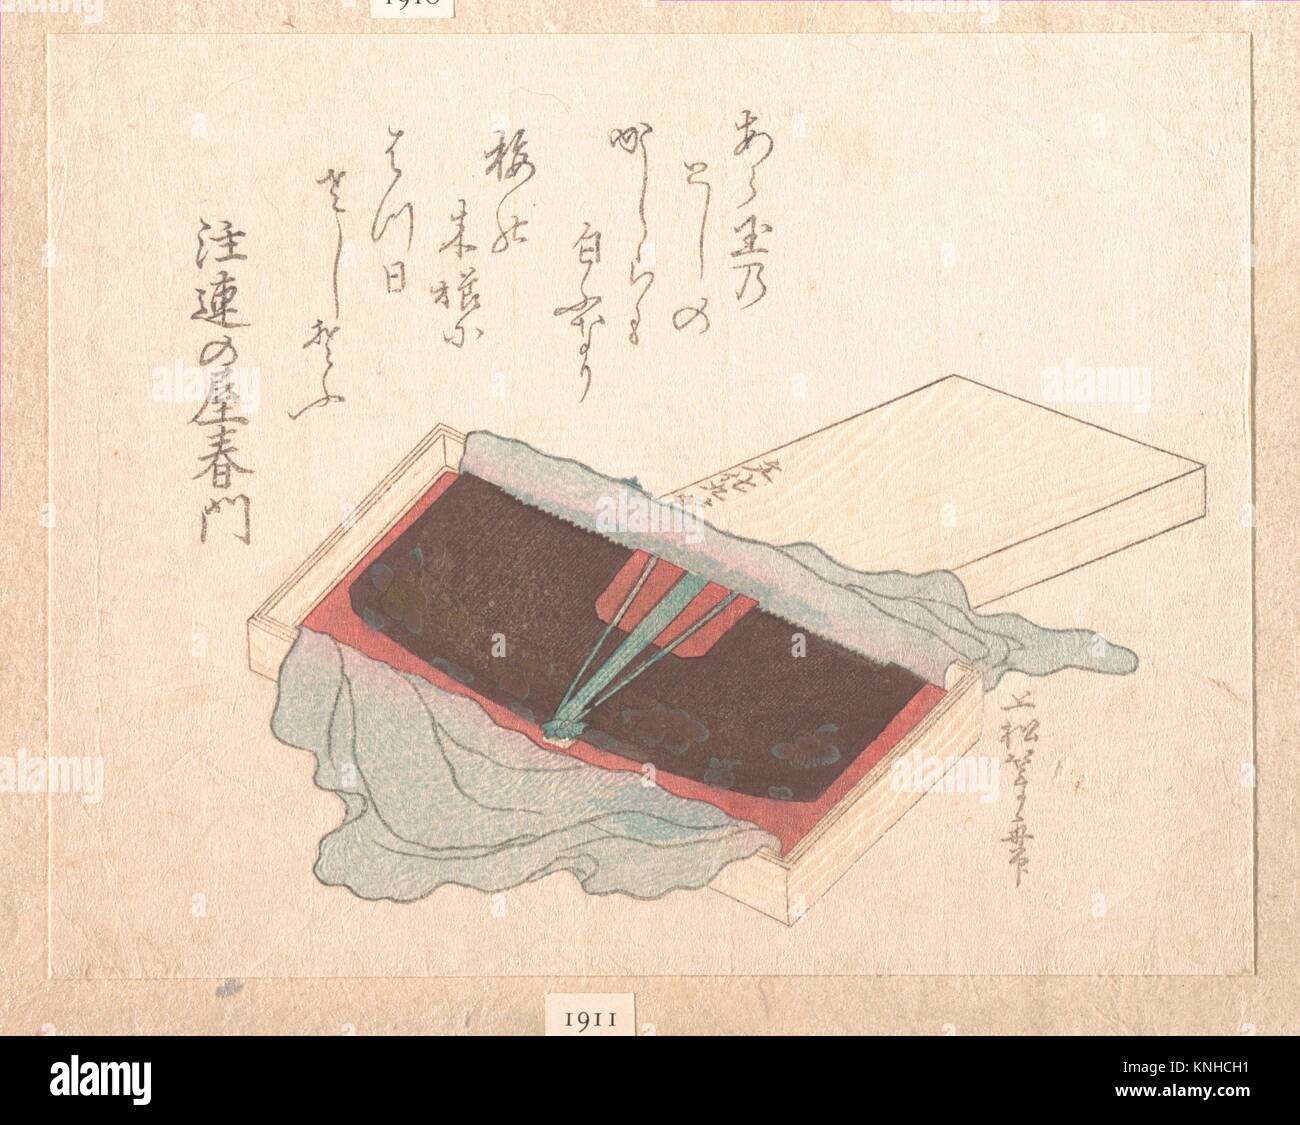 Artista: Uematsu Toshu (japonés, activo finales de 1810s-20s); Período: del periodo Edo (1615-1868); Fecha: 1812; Cultura: Japón; Media: policromía xilografía Foto de stock